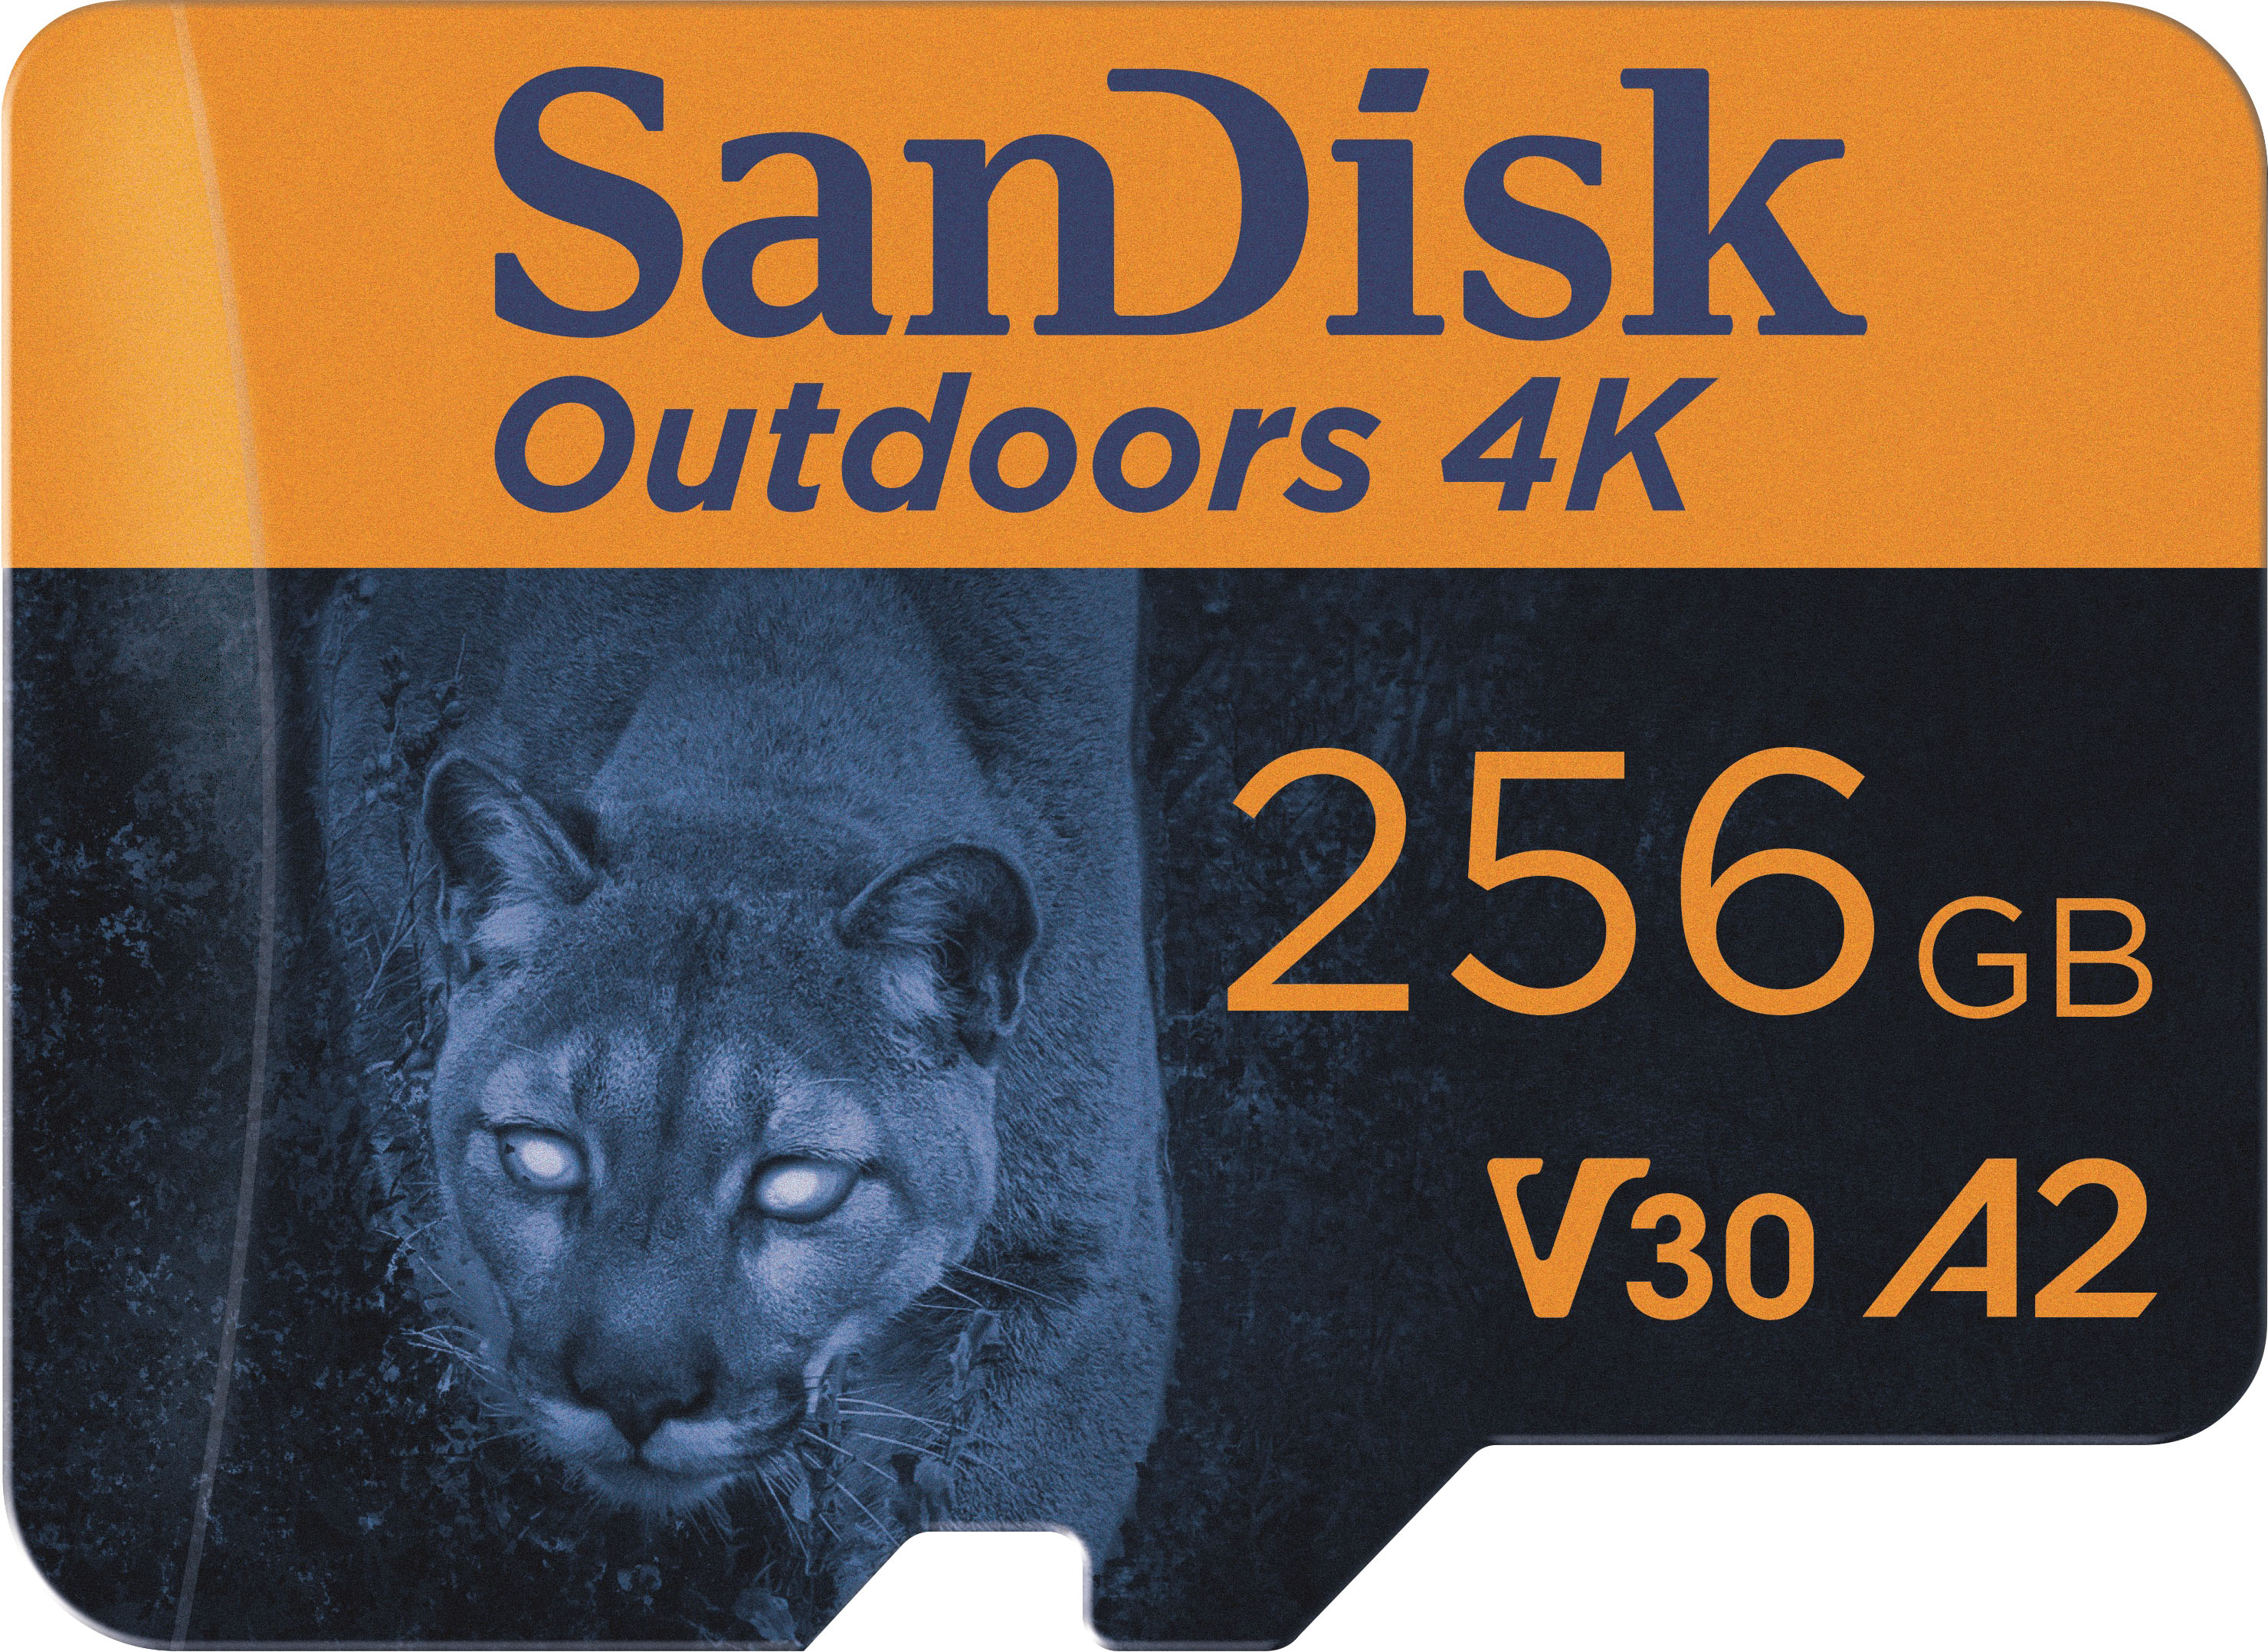 SanDisk Outdoors 4K 256GB microSDXC UHS-I Memory Card with SD Adapter  SDSQXAV-256G-GN6VA - Best Buy